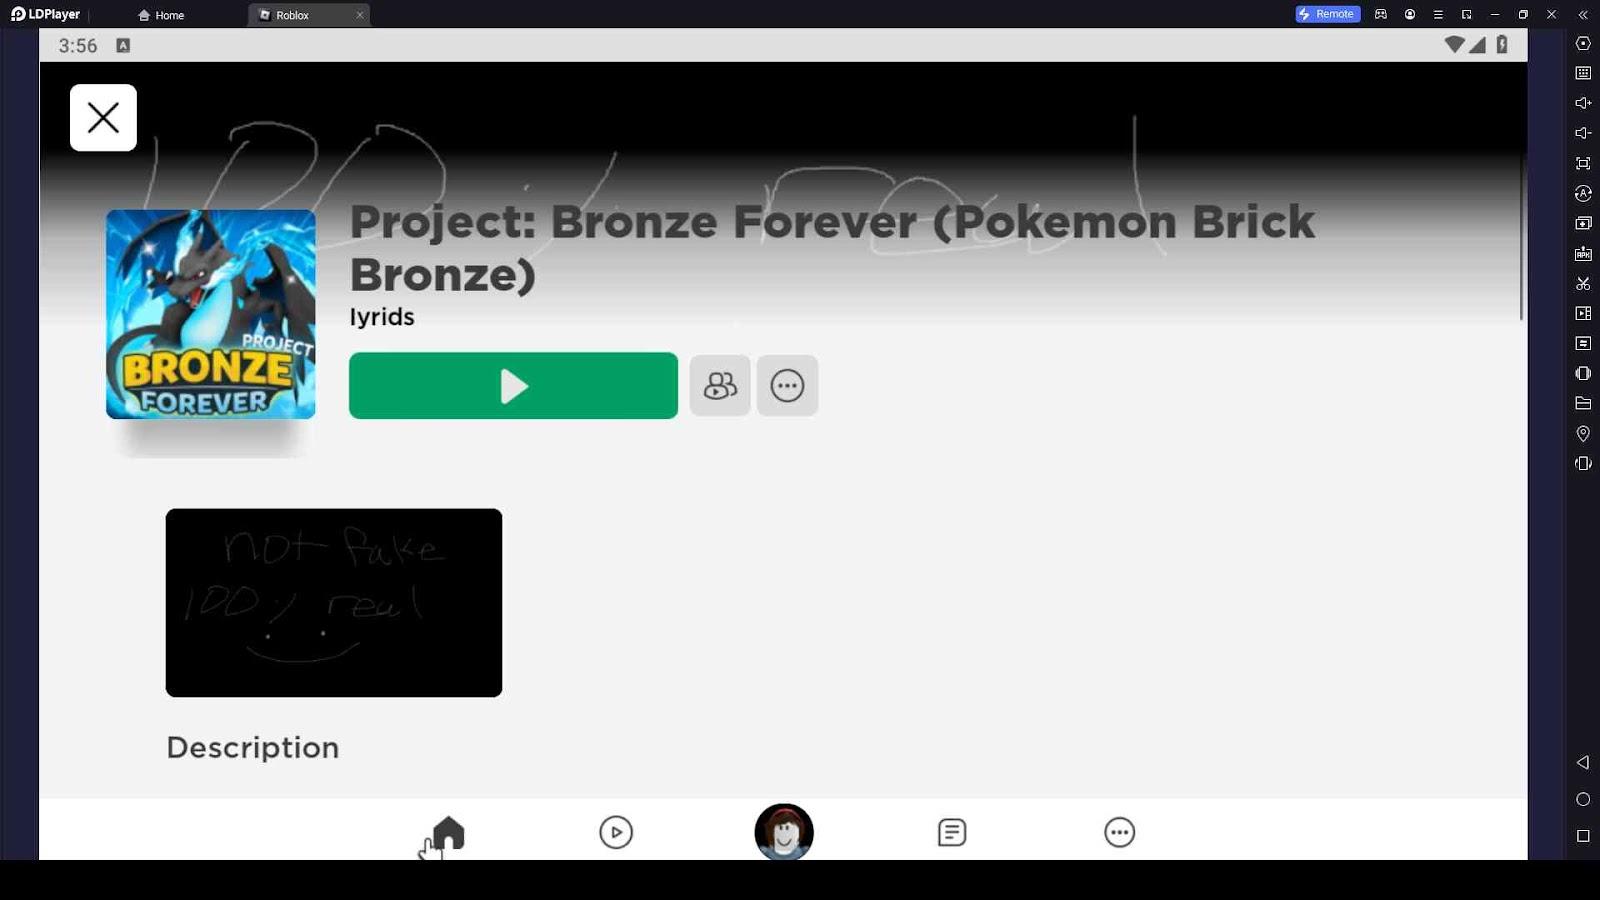 Pokémon Brick Bronze, Roblox Wiki